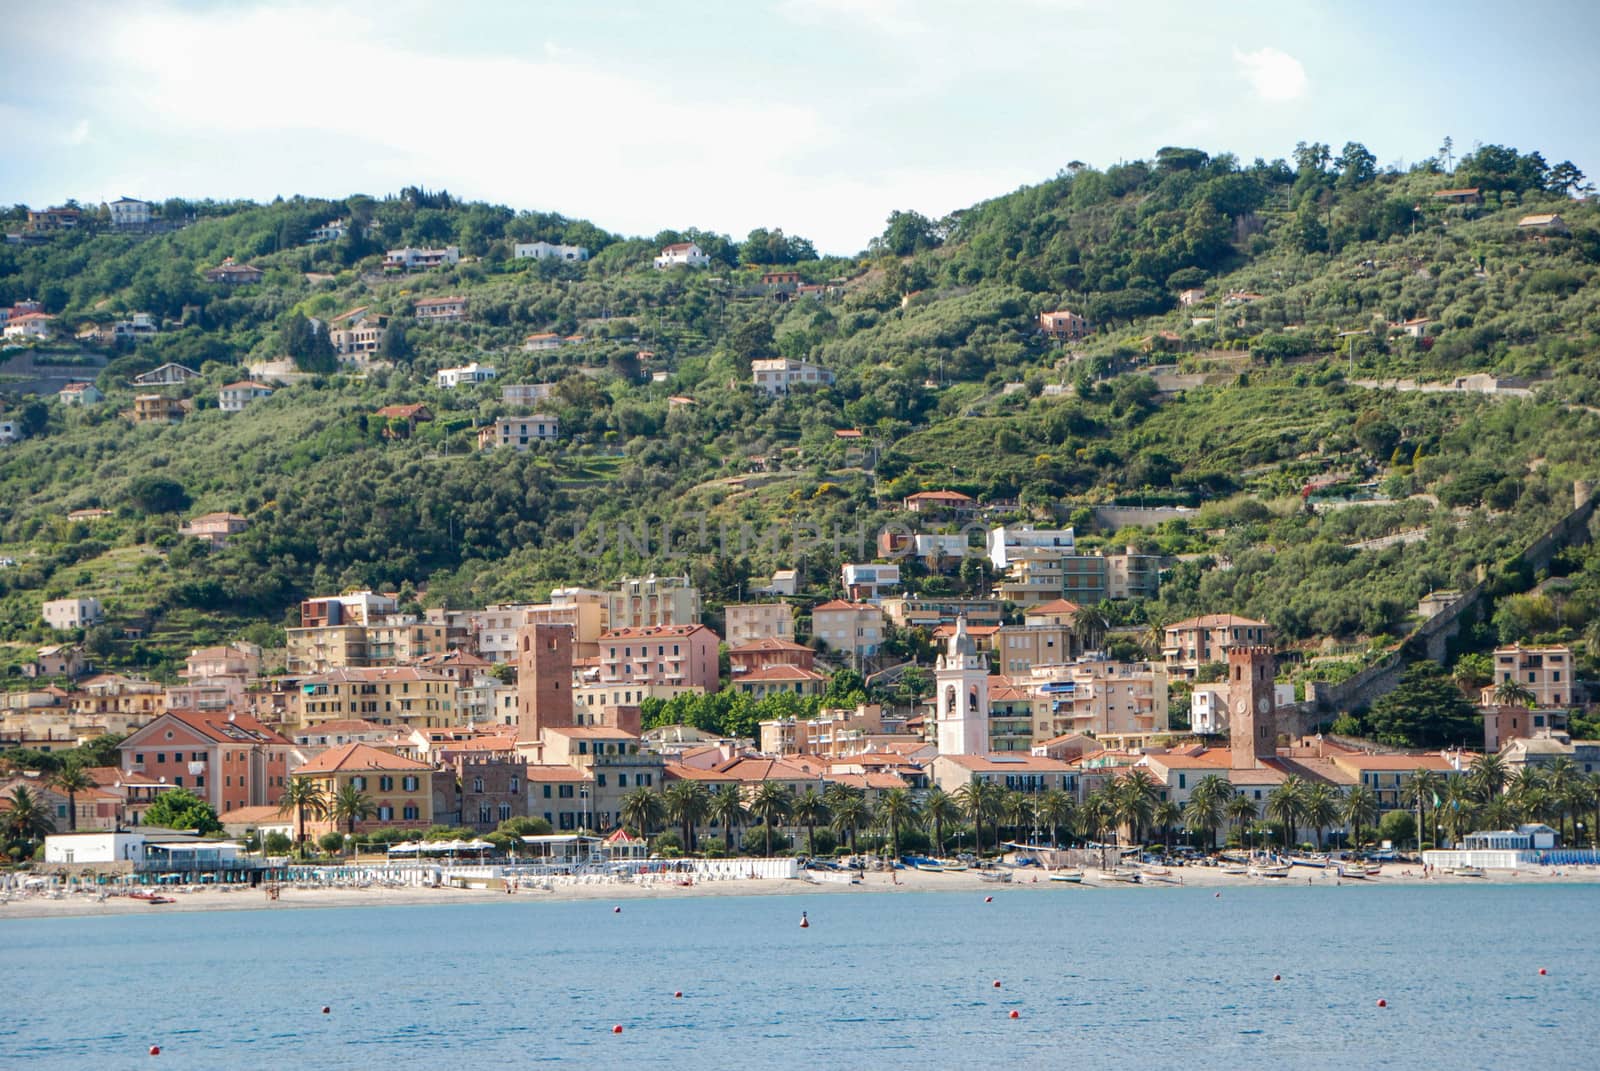 Noli, Liguria - Italy by cosca